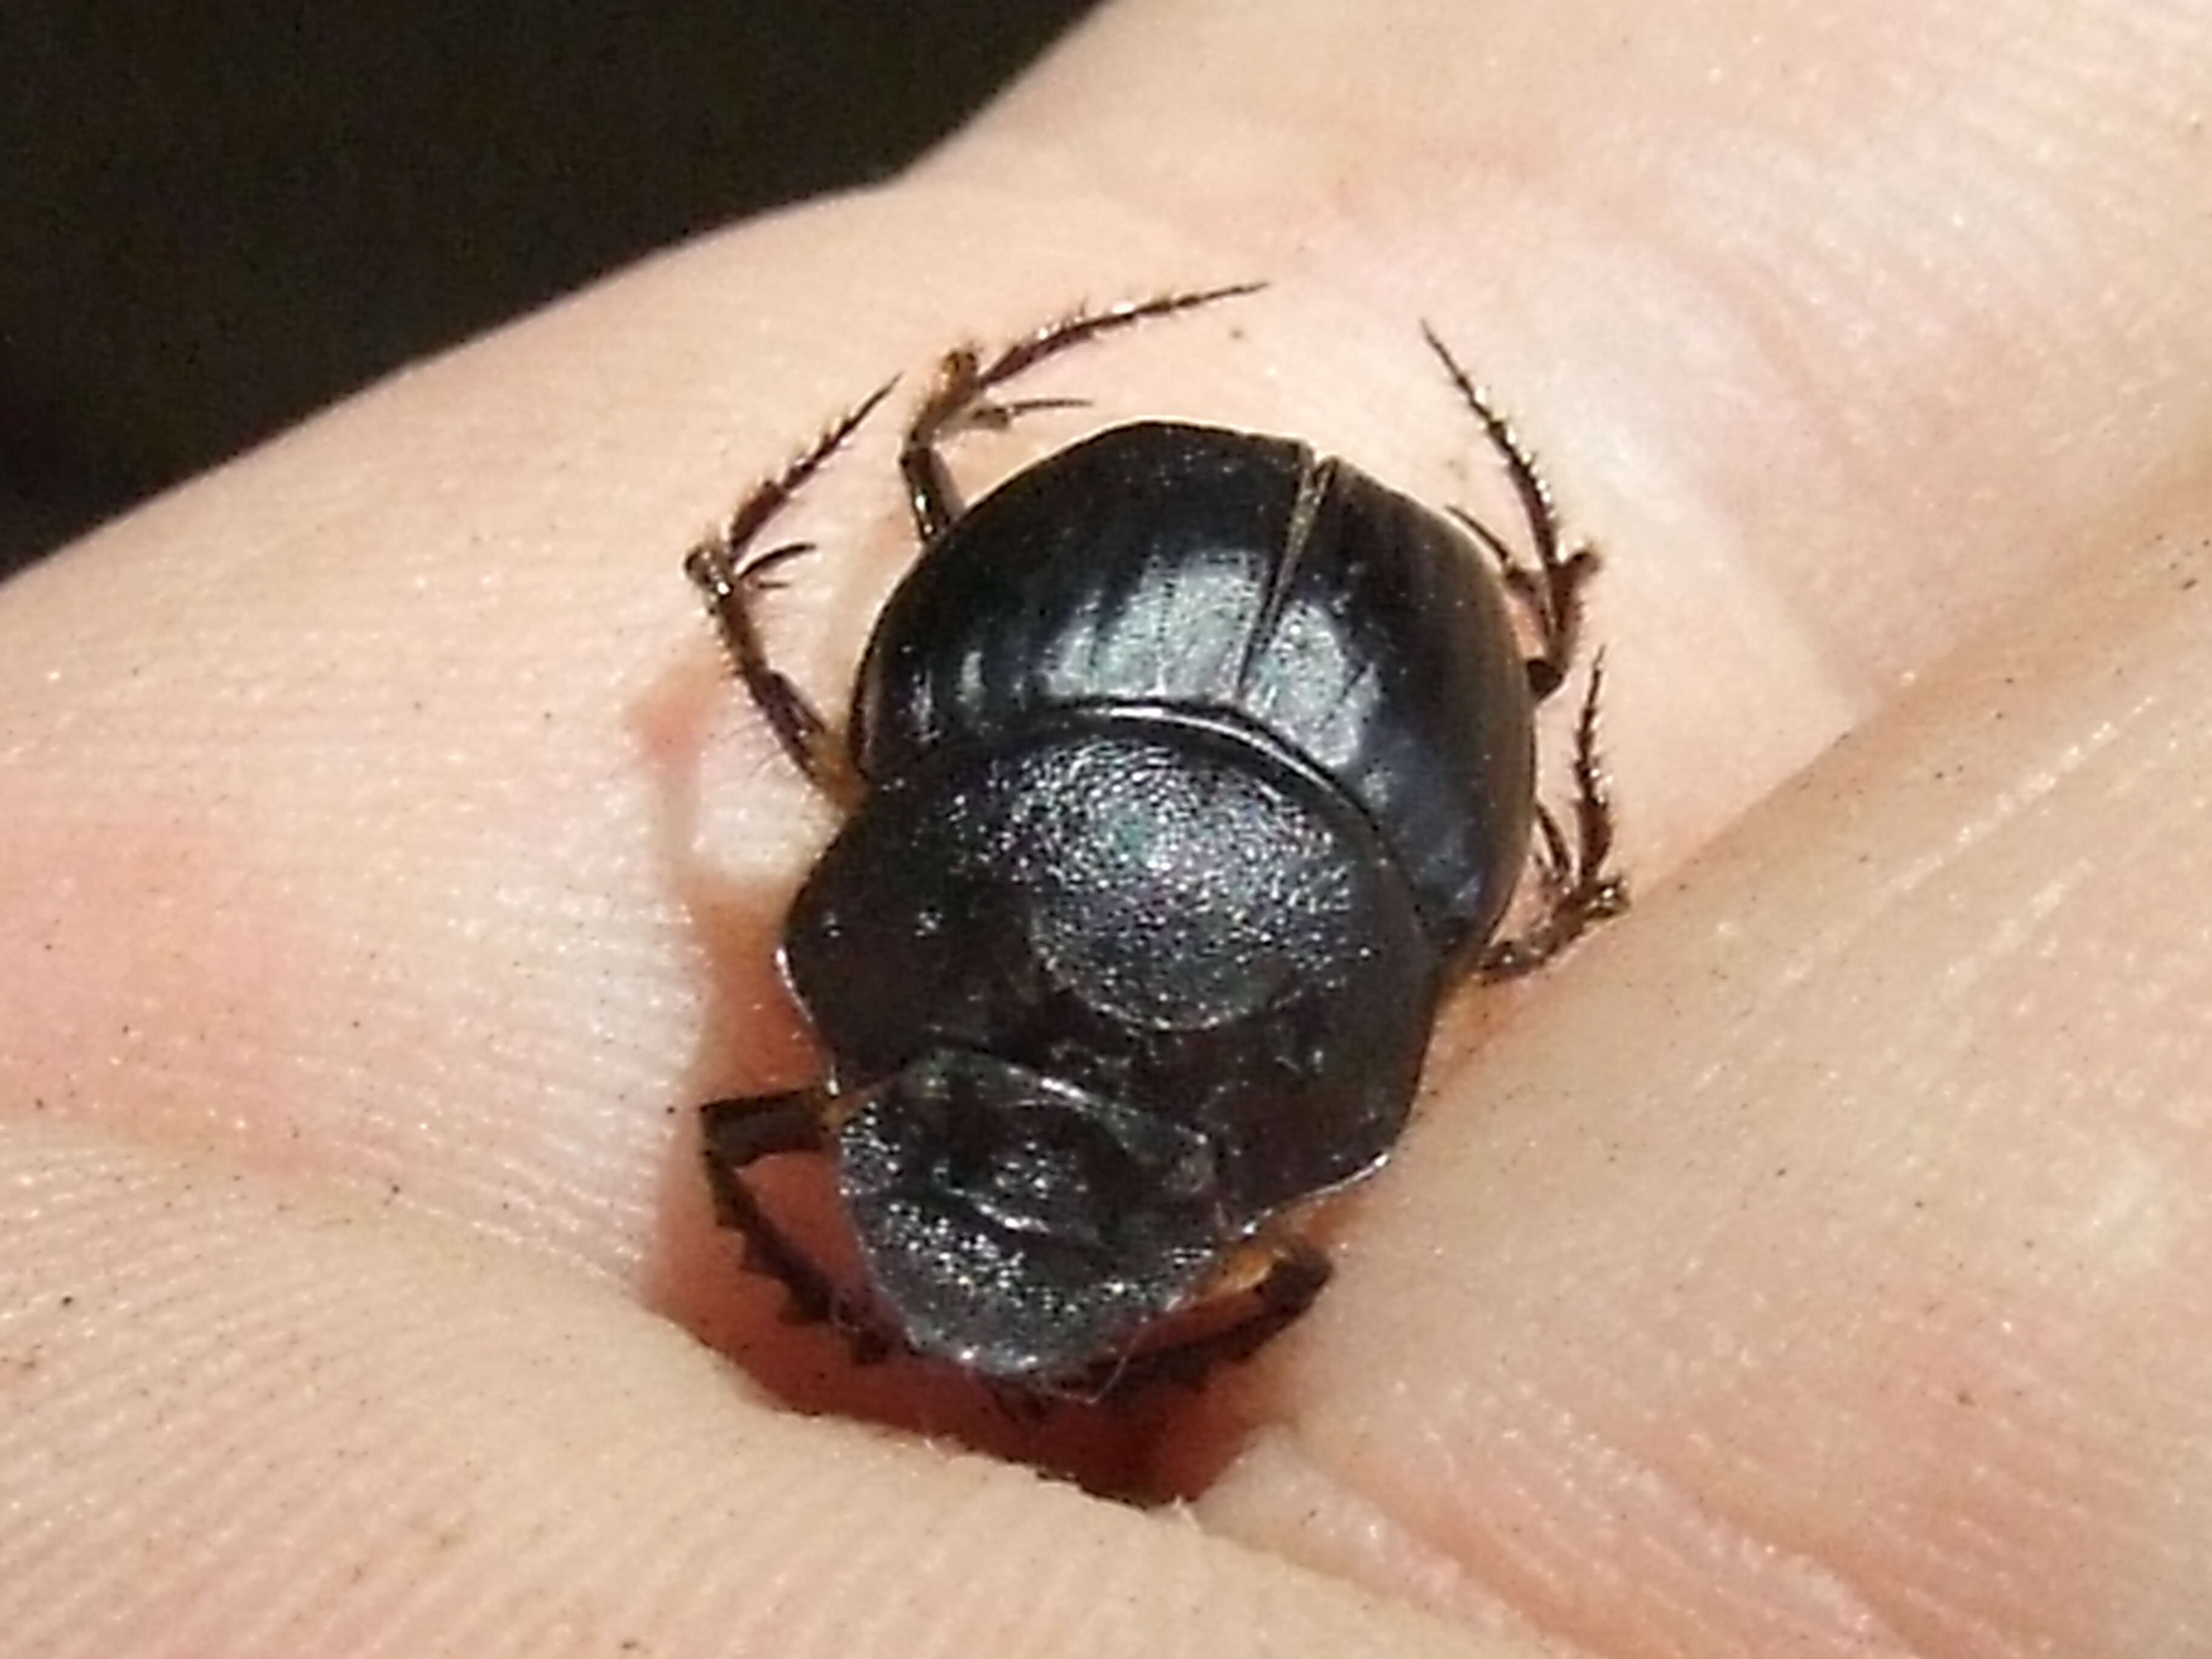 Image of scarab beetles